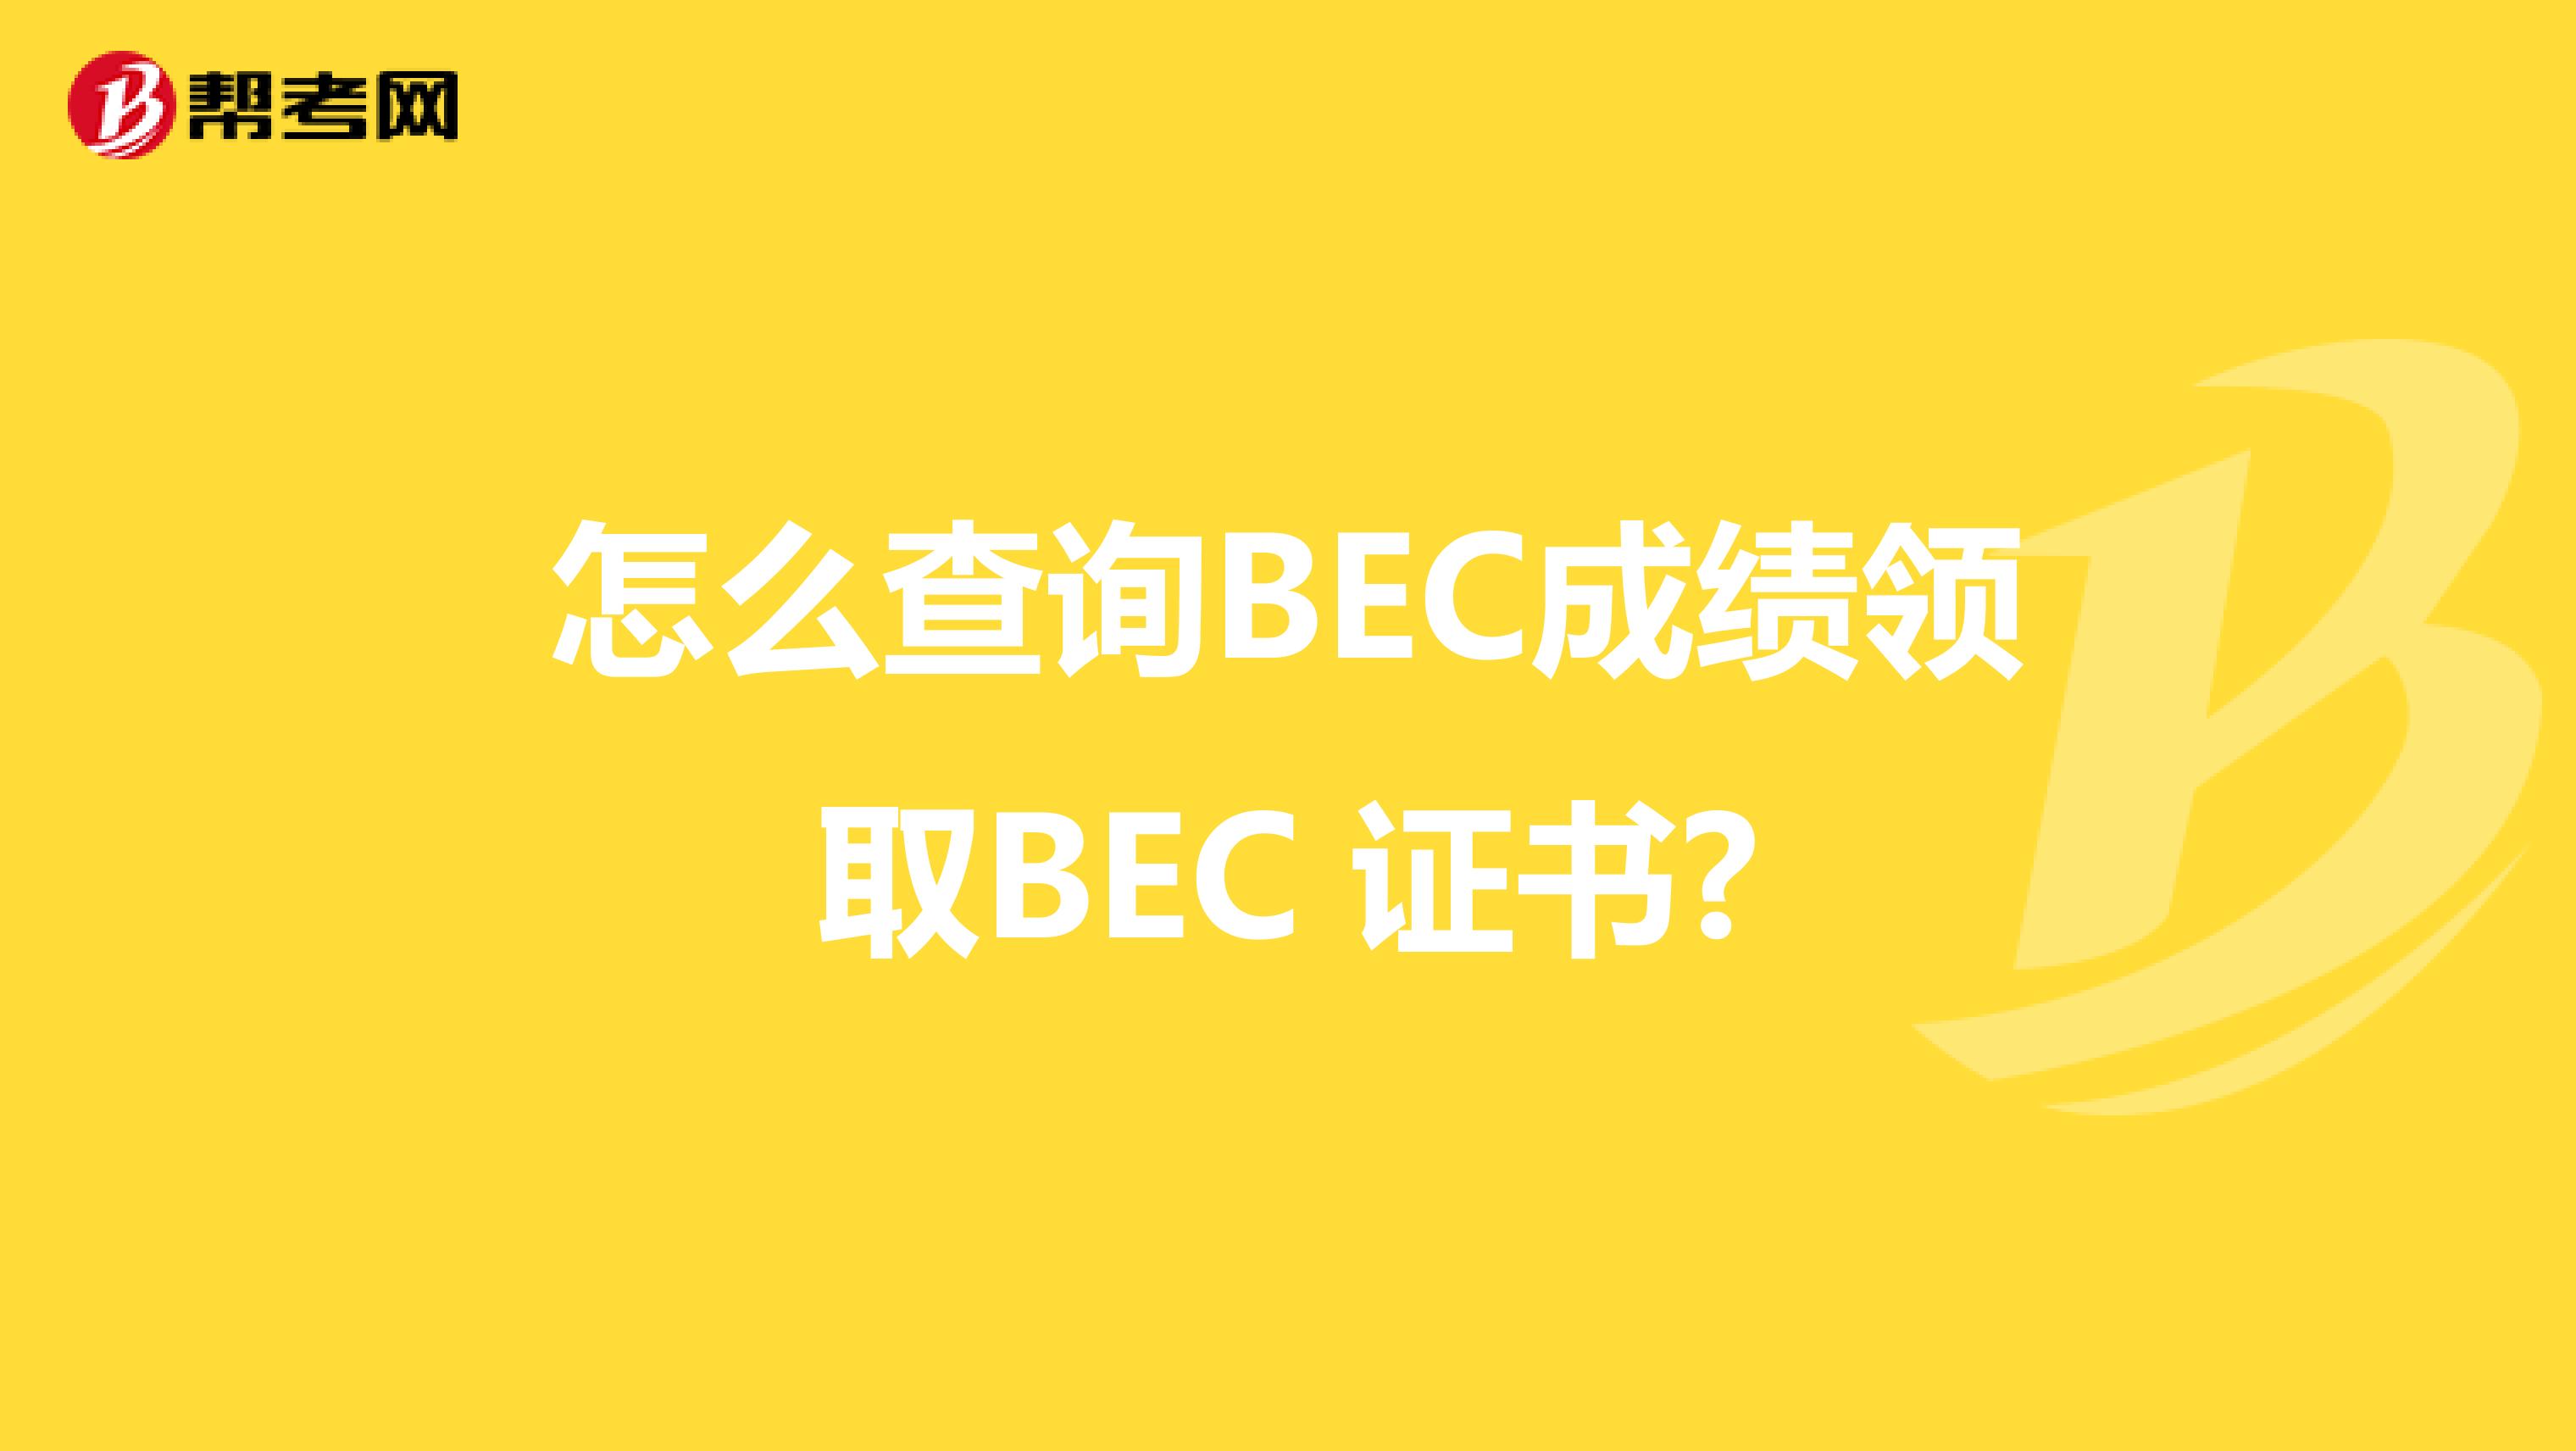 怎么查询BEC成绩领取BEC 证书?